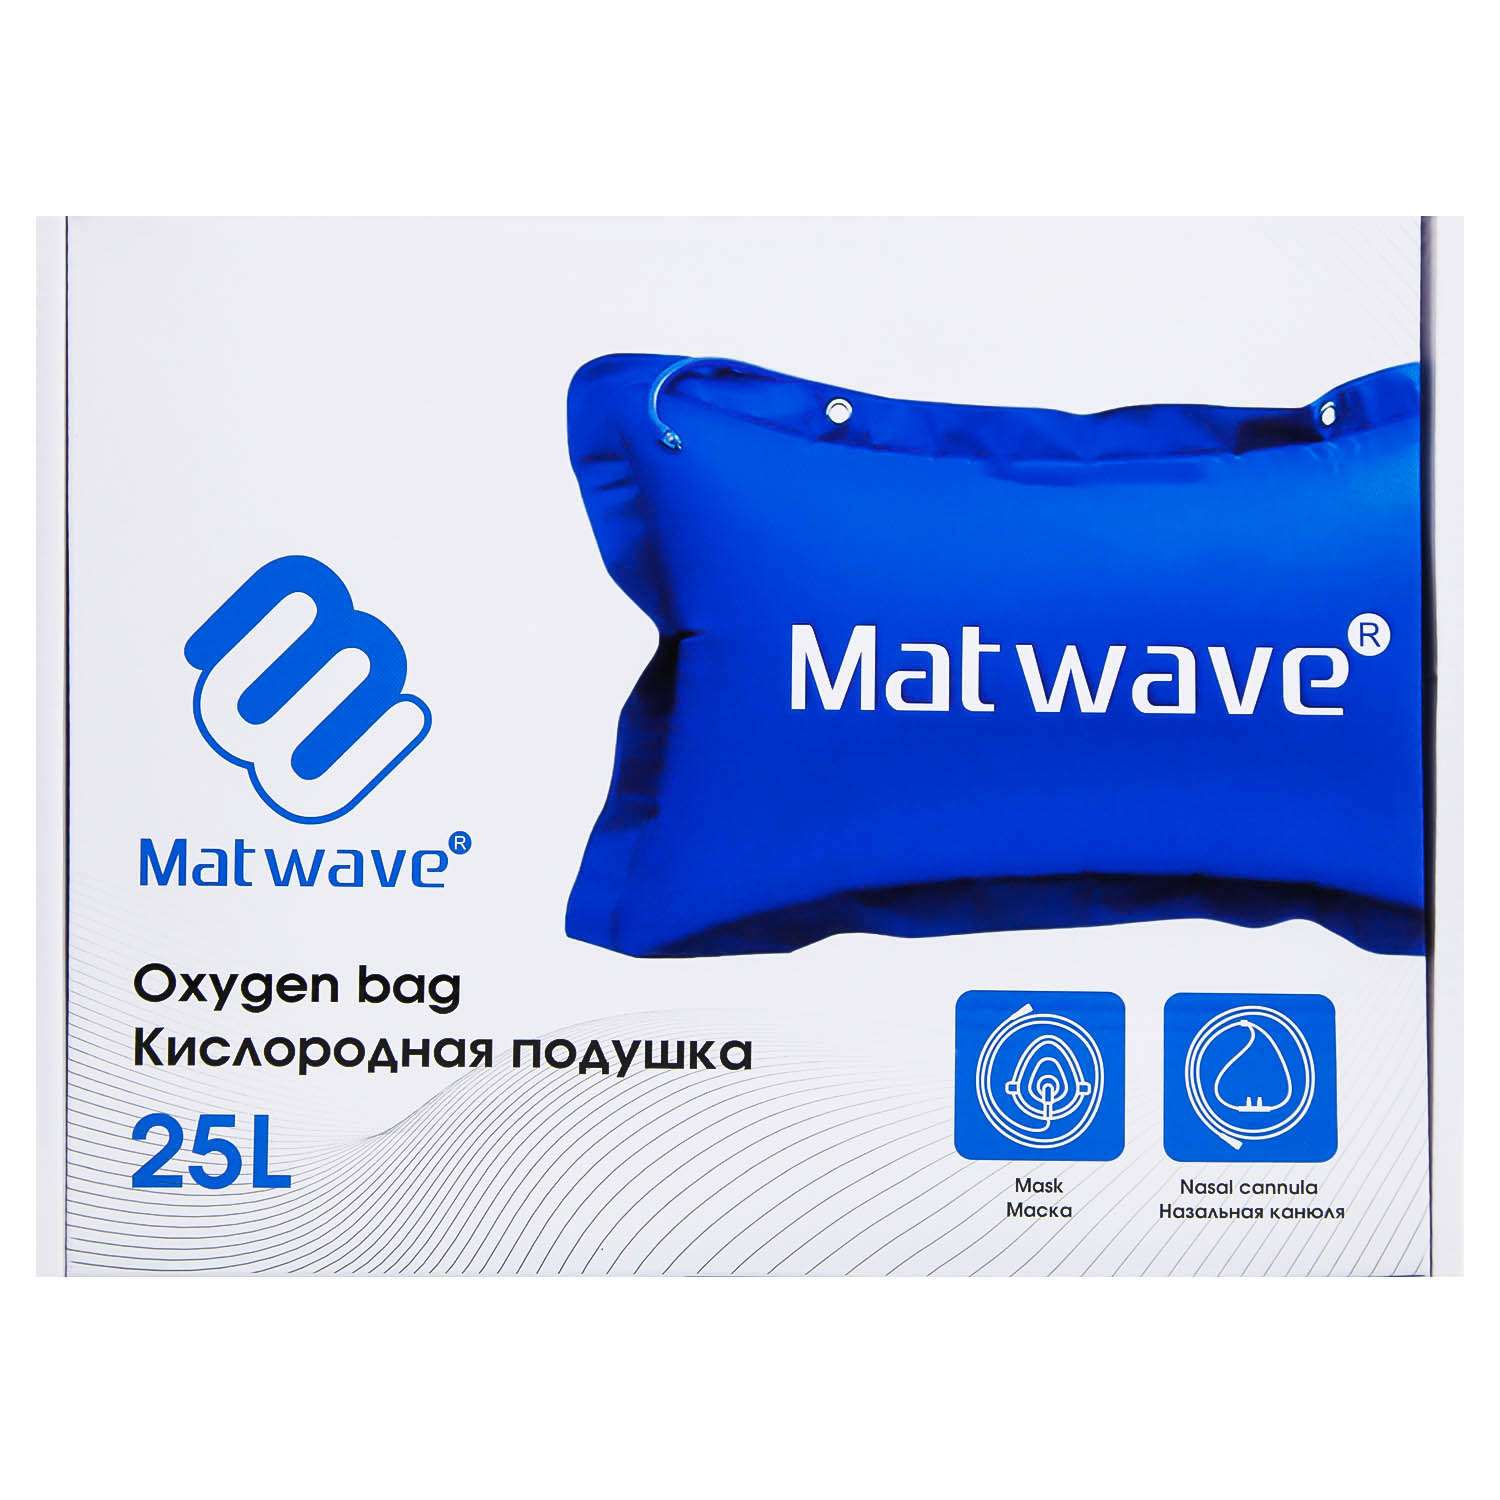 Кислородная подушка Matwave 25L + 2 маски + назальная канюля - фото 7